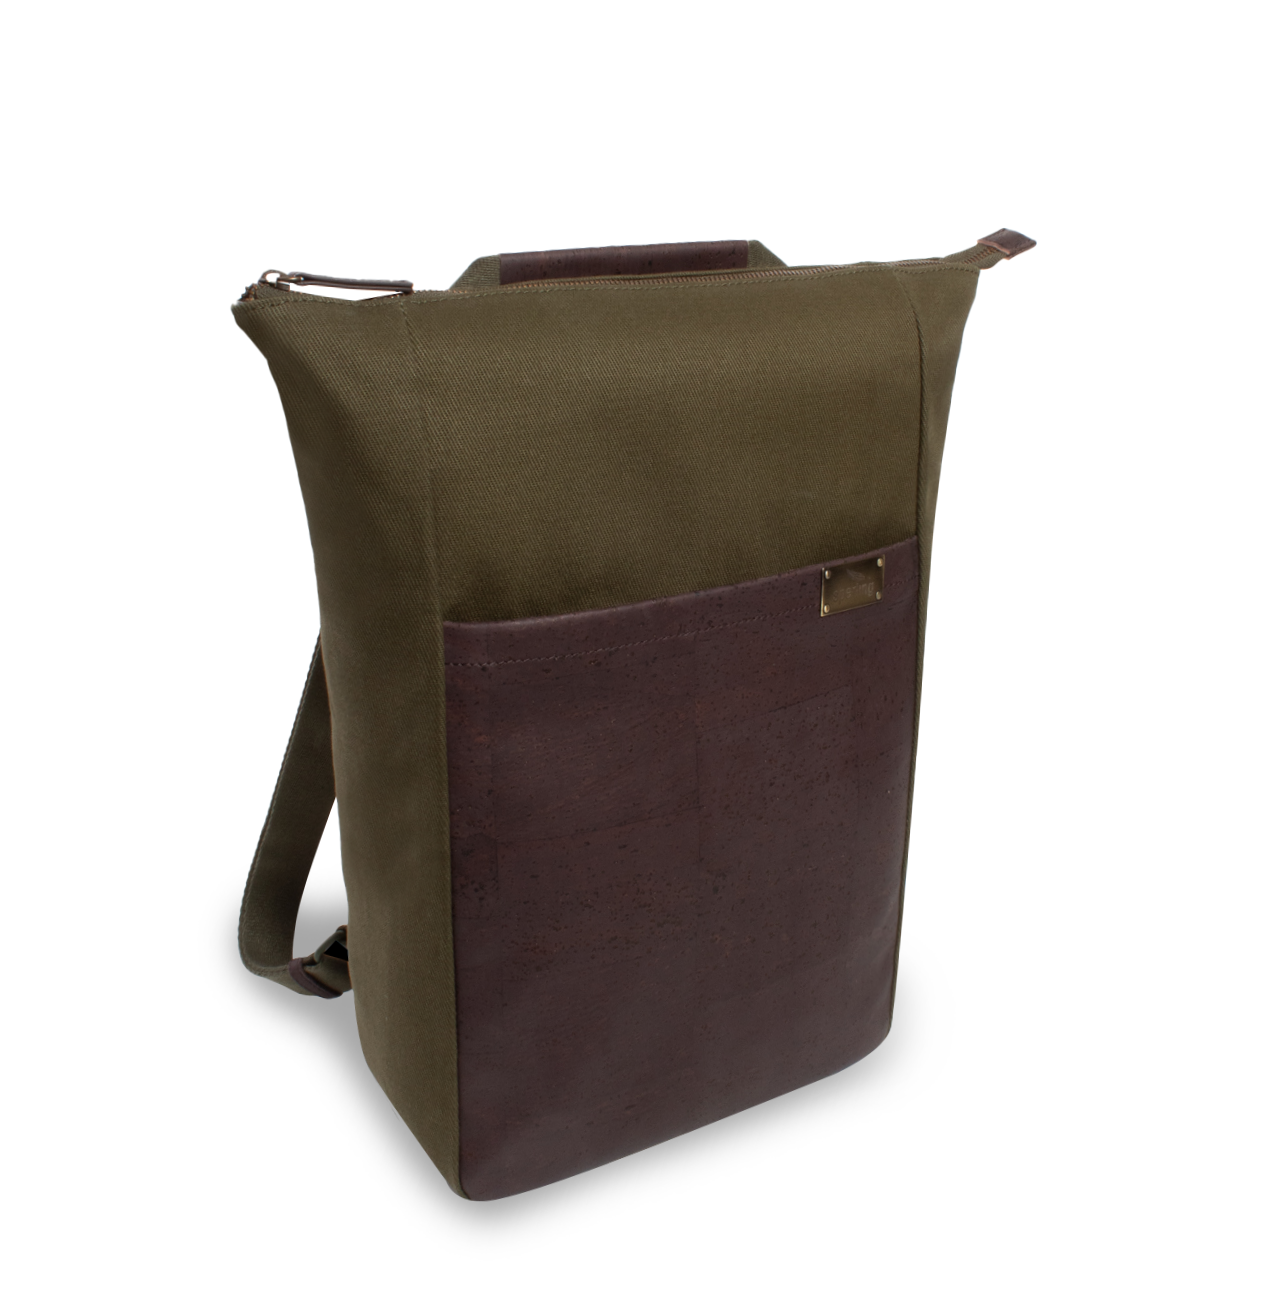 Nachhaltiger 2-in-1 Rucksack aus Kork in grün #Farbe_Kiwi Chocolate